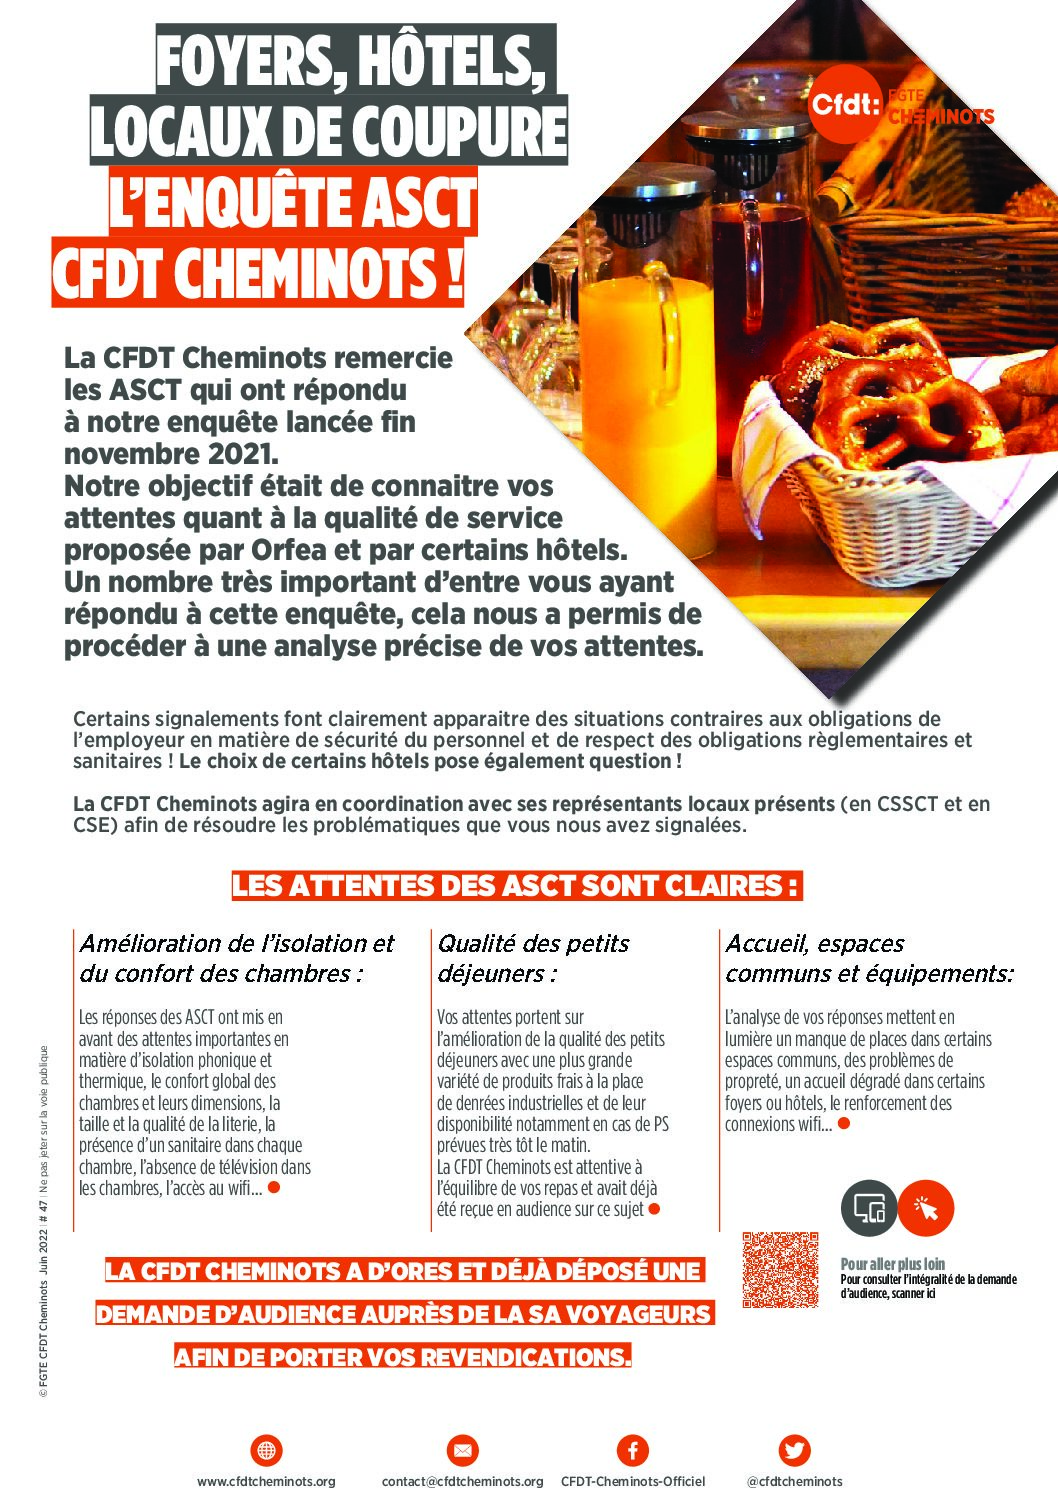 FOYERS, HÔTELS, LOCAUX DE COUPURE L’ENQUÊTE ASCT CFDT CHEMINOTS !